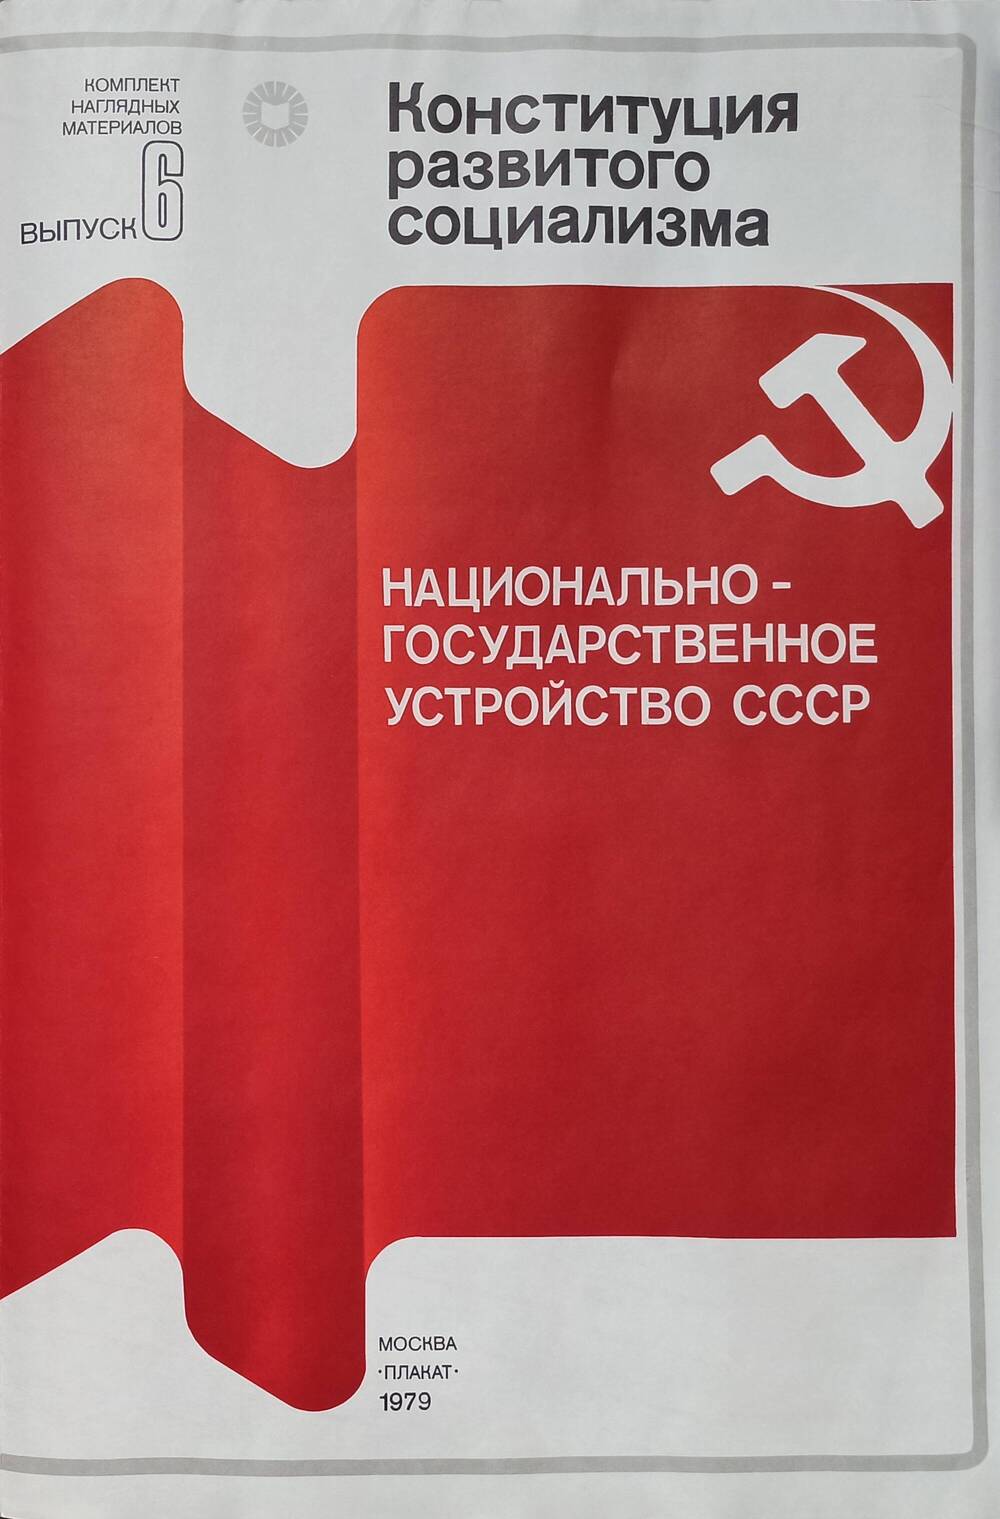 Плакат
«Конституция развитого социализма»
Выпуск 6 «Национально-государственное
устройство СССР»